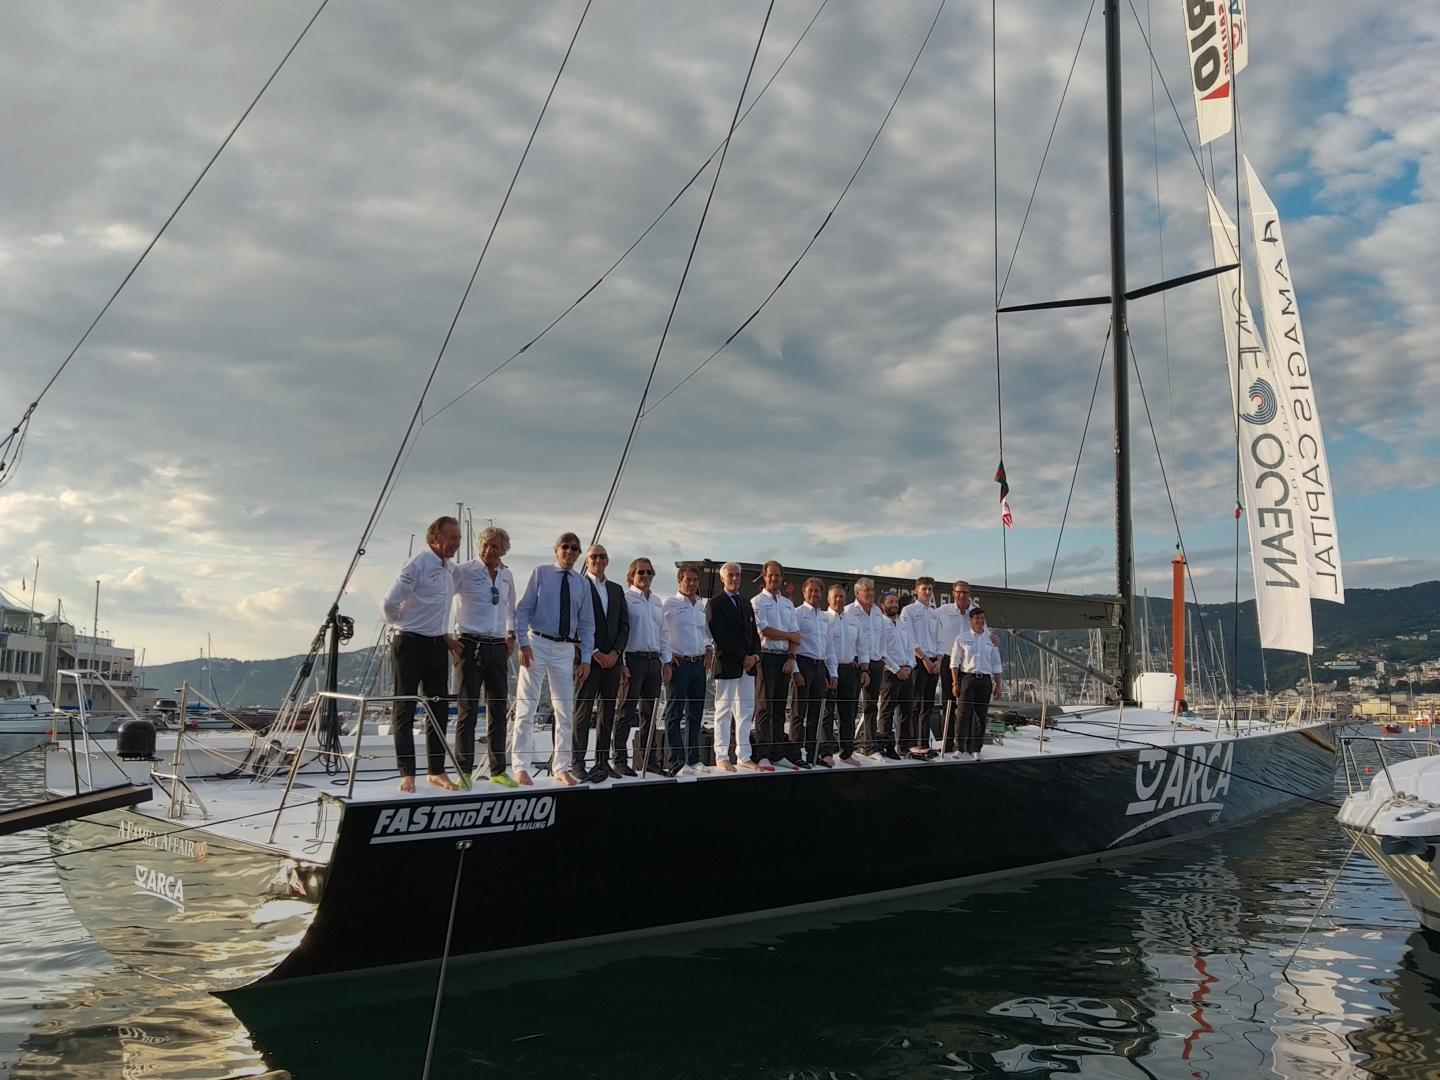 Il Fast and Furio Sailing Team presenta la stagione agonistica del Maxi 100 Arca SGR